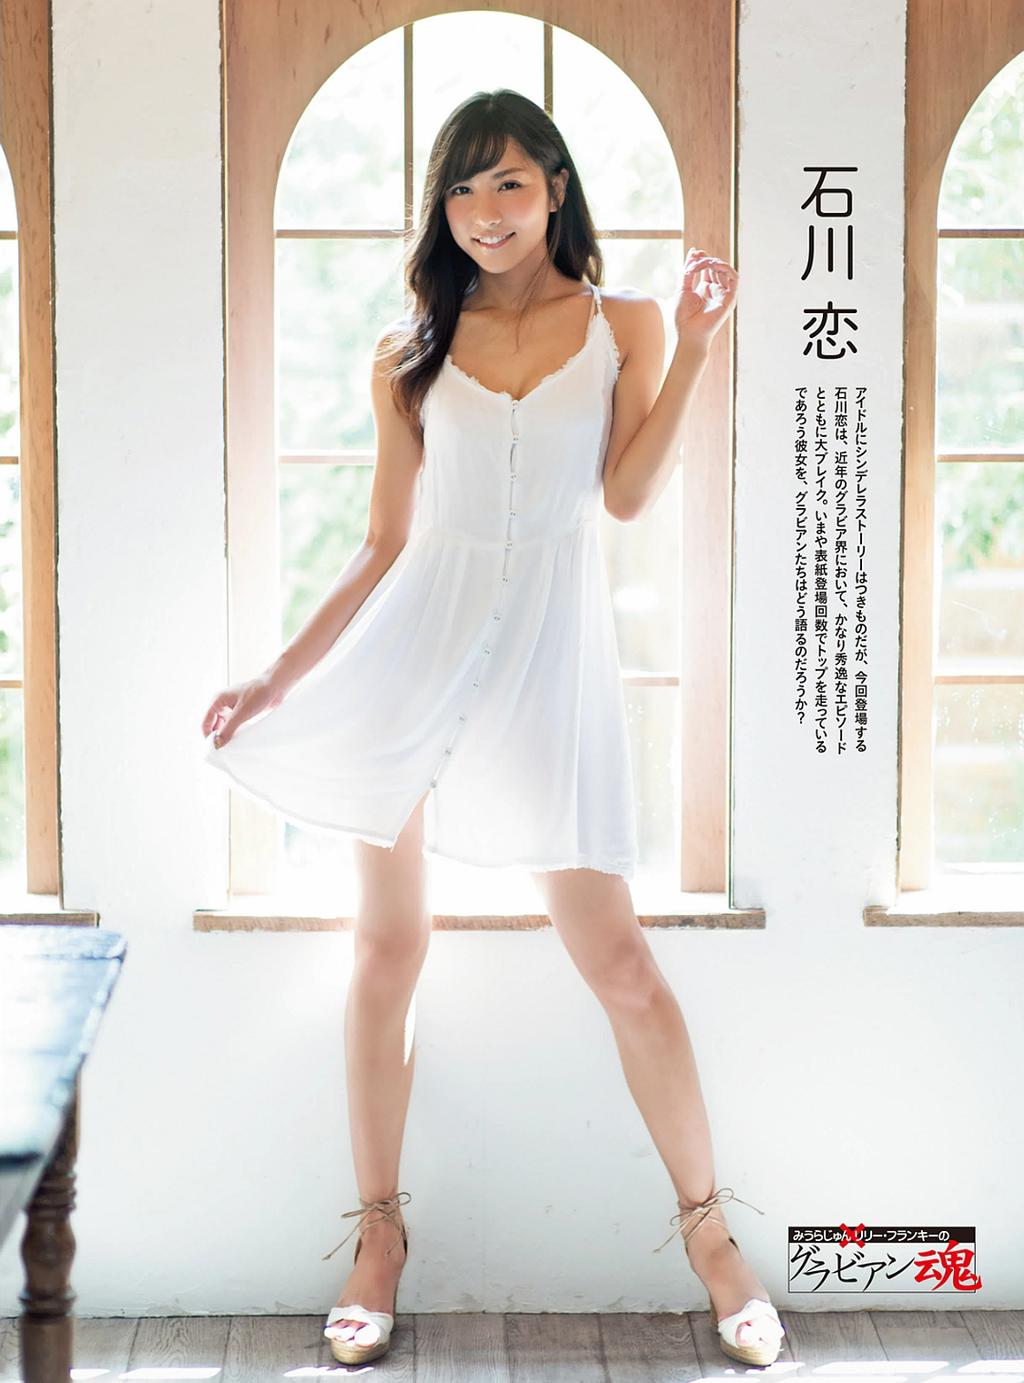 杂志[Weekly SPA!] 2016.10.25 (石川恋 西内まりや 片山萌美 SKE48)